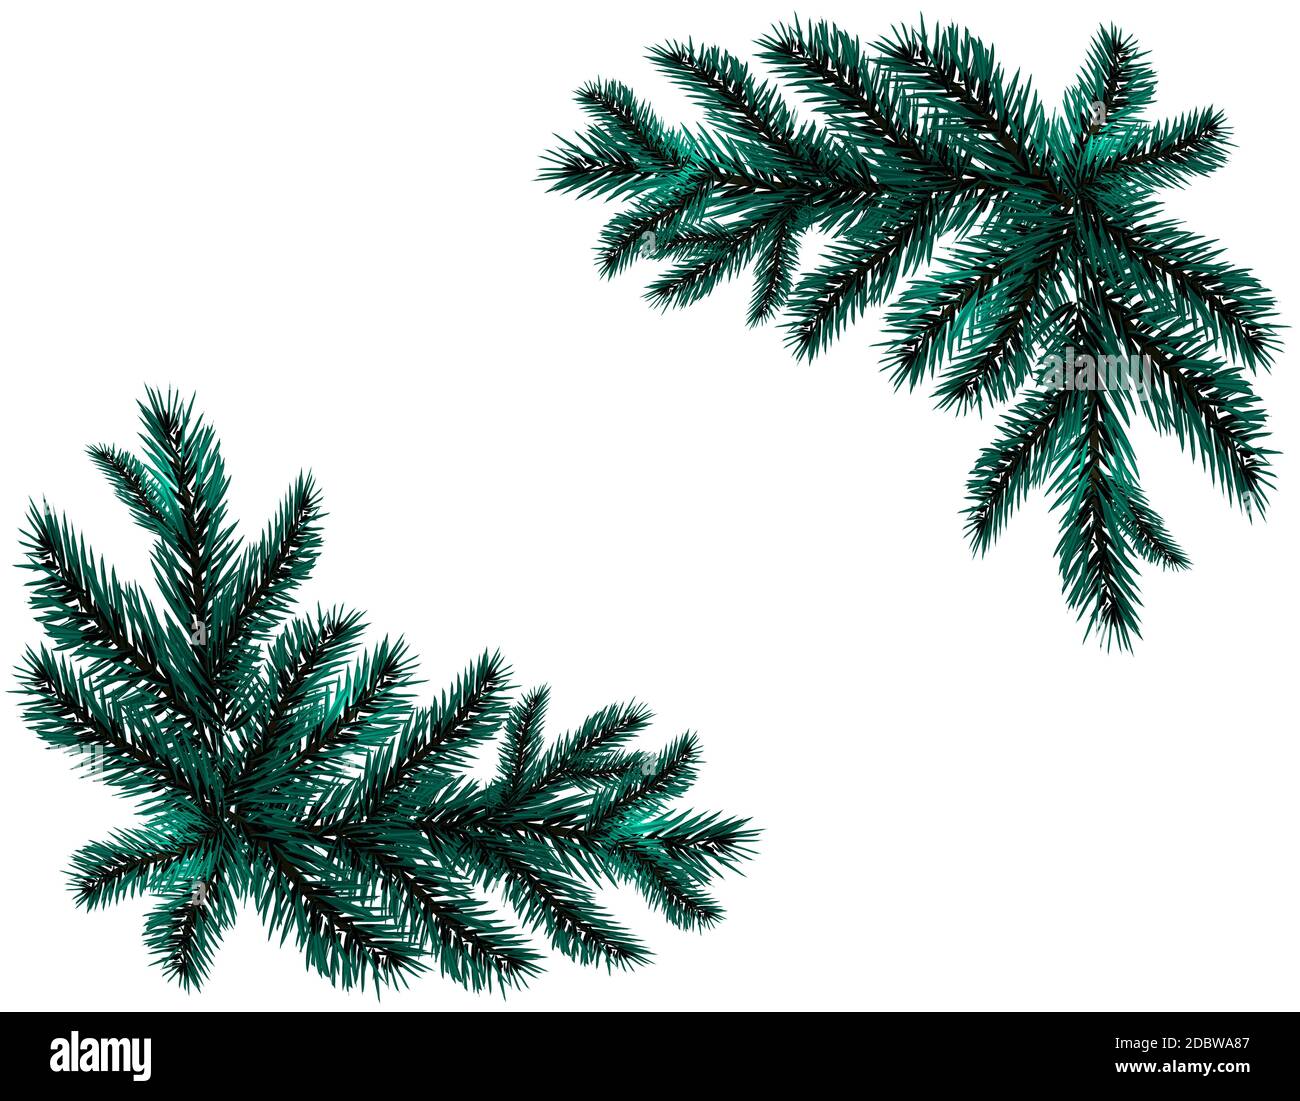 Dos ramas realistas azul picea. Colocado en las esquinas. Ramas de abeto. Aislado sobre fondo blanco. Ilustración del vector de Navidad Foto de stock